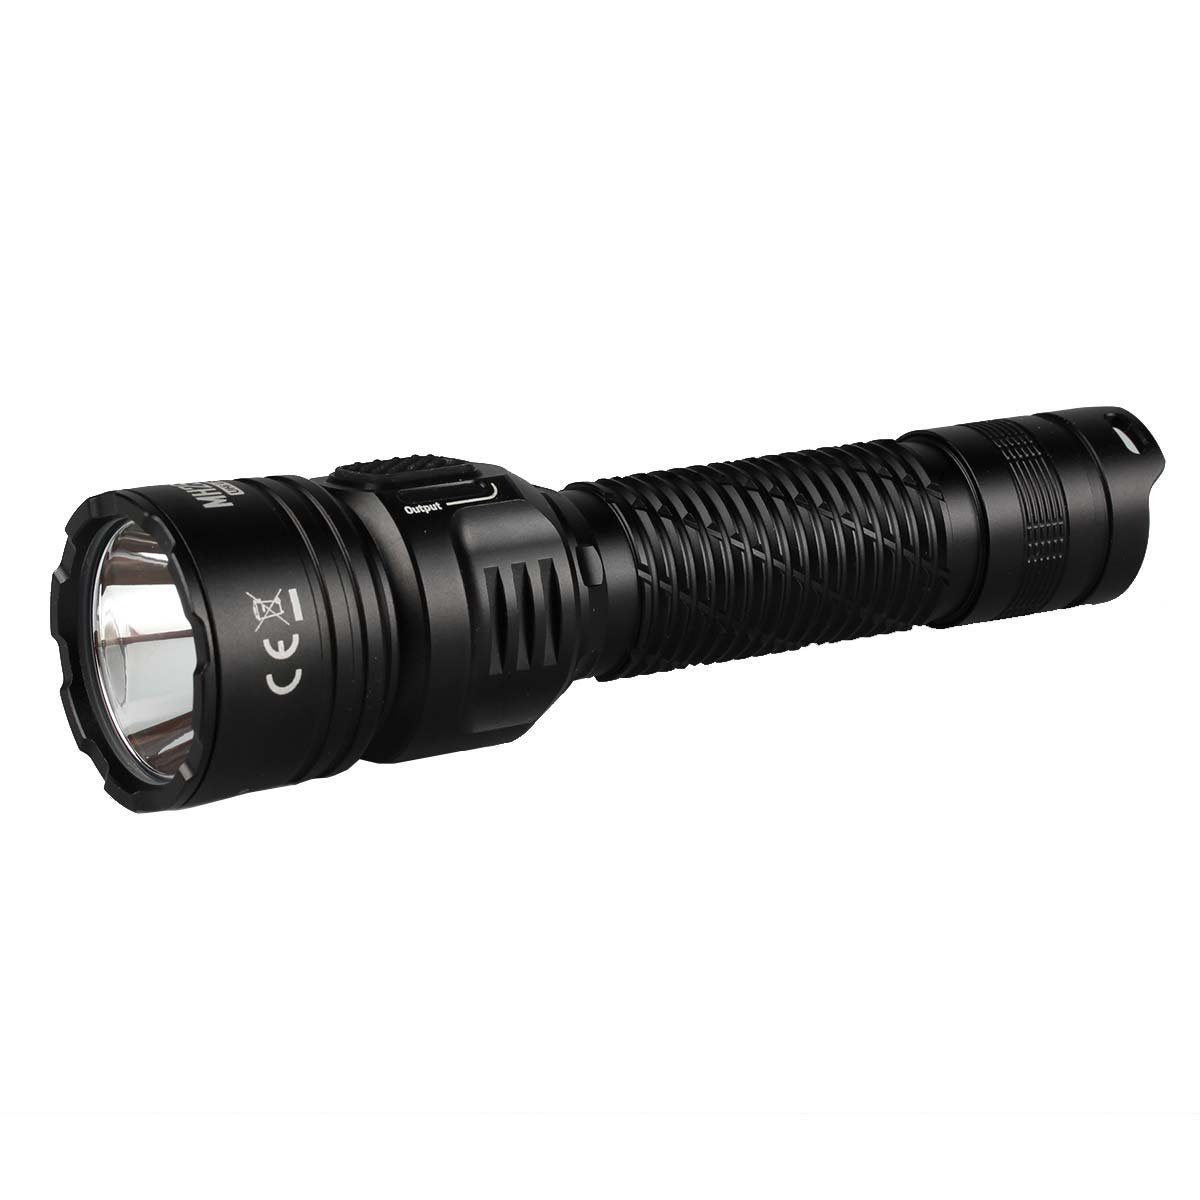 MH25 Taschenlampe Nitecore Pro Lumen LED LED Taschenlampe 3300